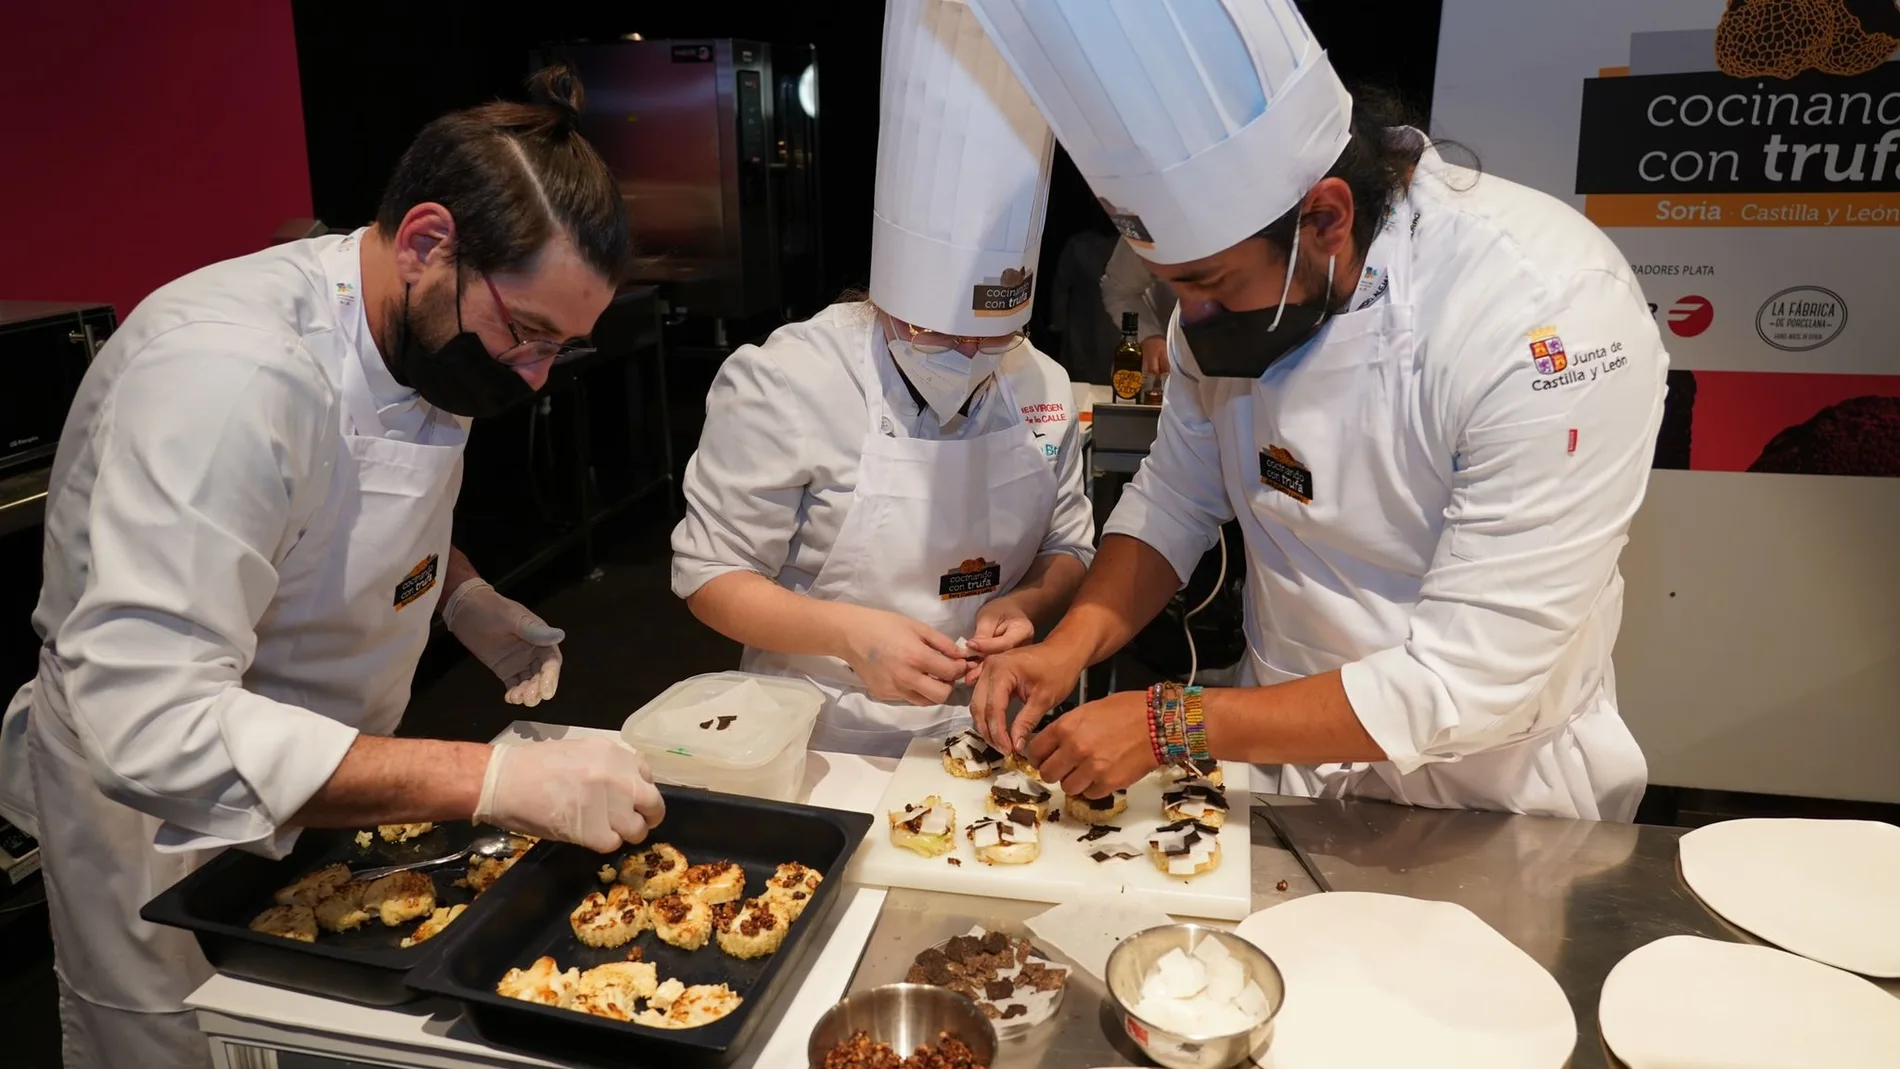 El chef tailandés Anthony Burd se convierte en el campeón mundial de cocina con trufa en Soria